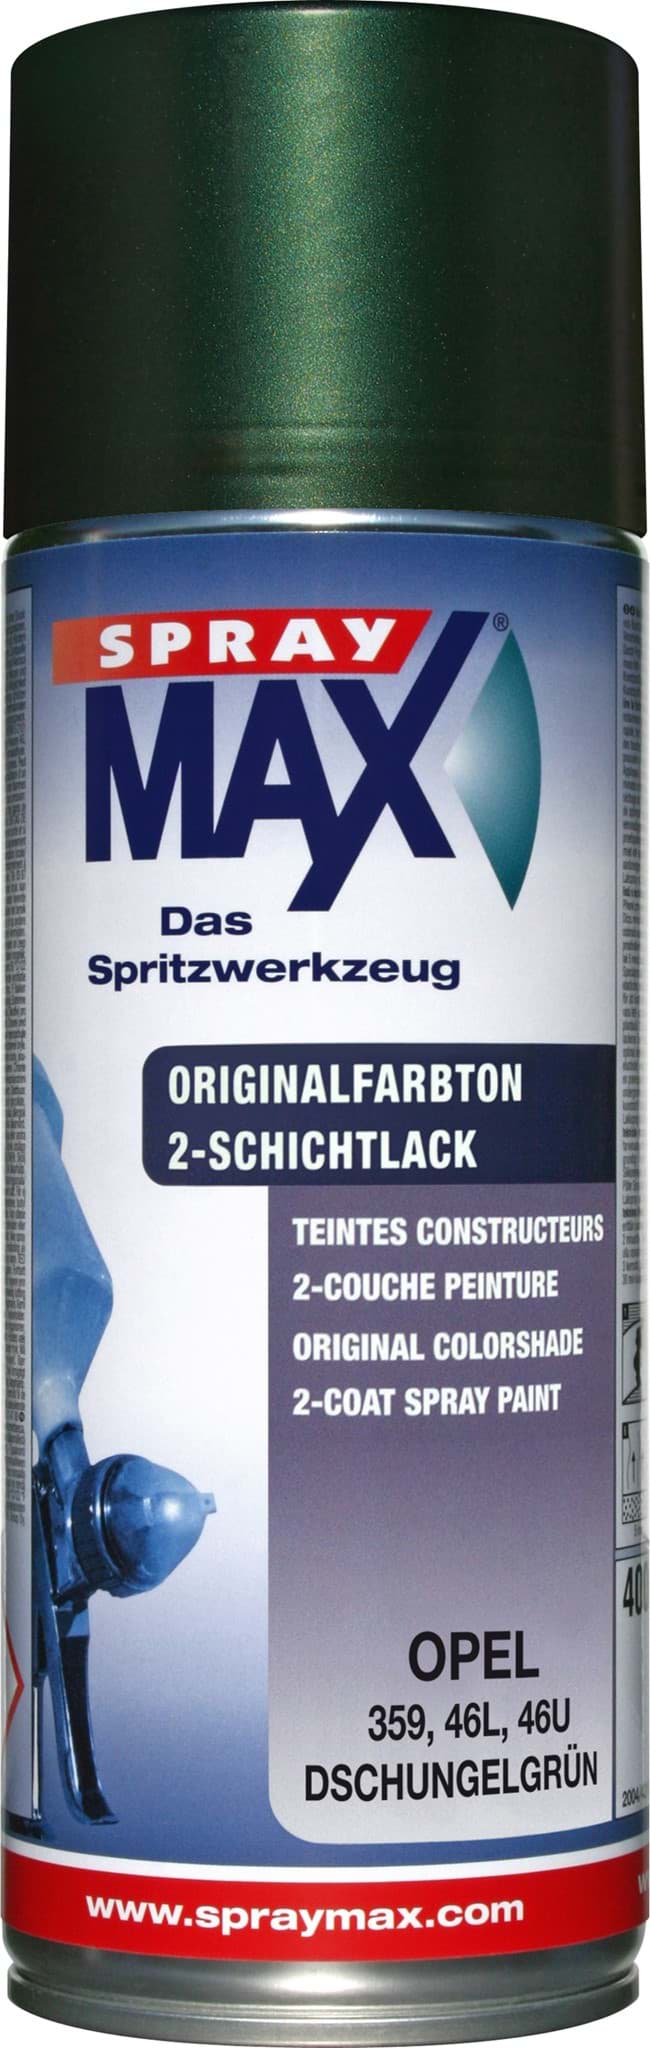 Afbeelding van SprayMax Originalfarbton für Opel 359 dschungelgrün